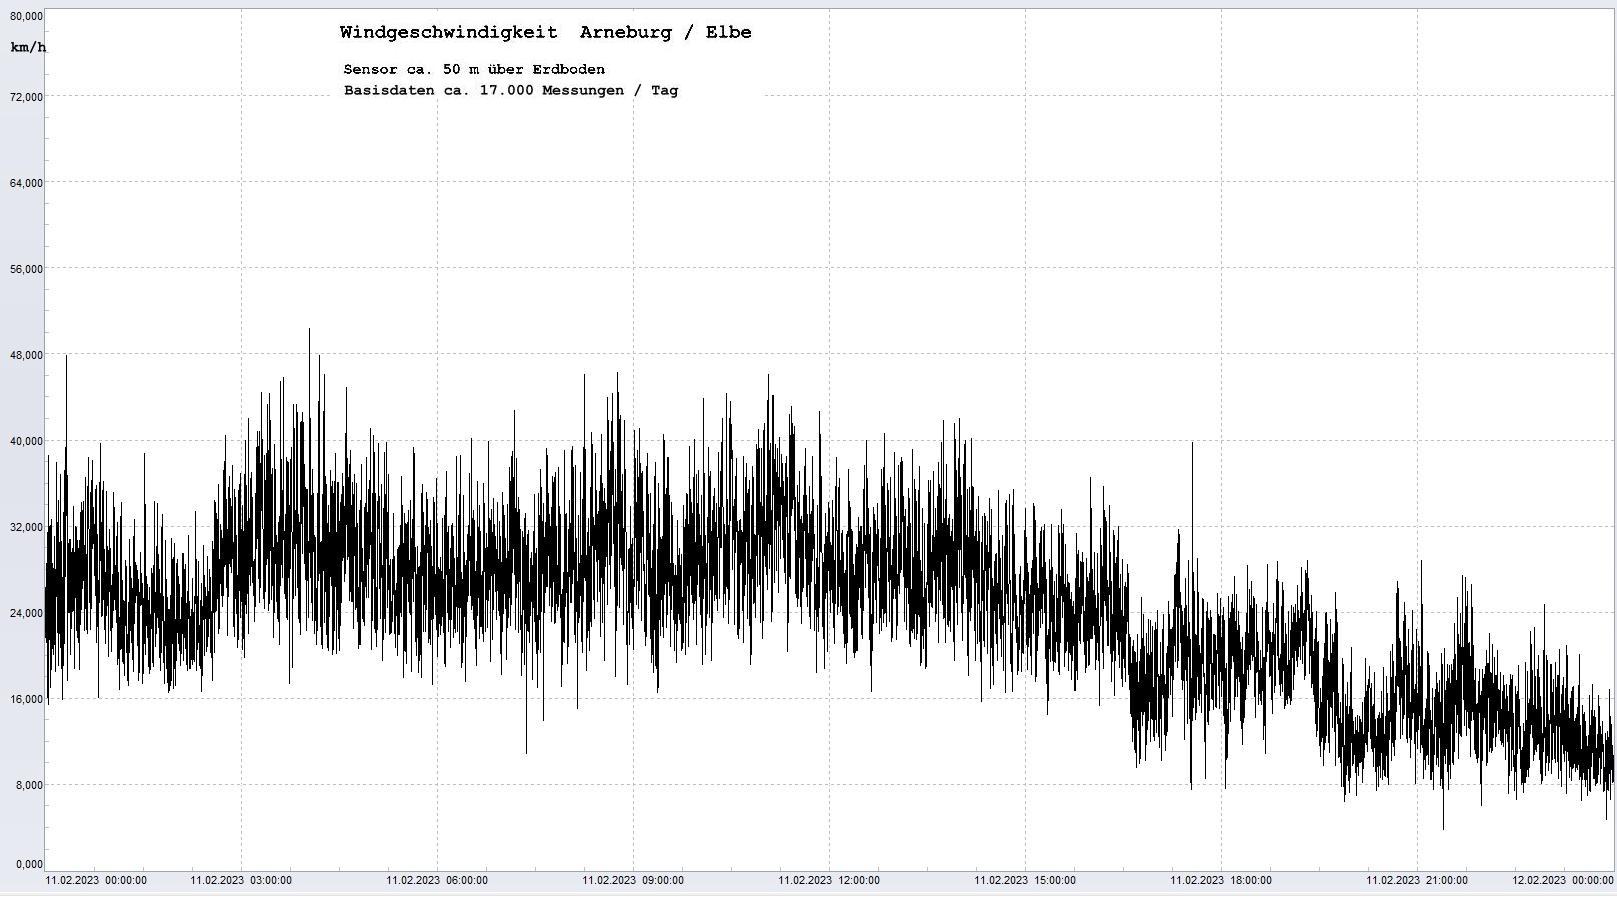 Arneburg Tages-Diagramm Winddaten, 11.02.2023
  Diagramm, Sensor auf Gebude, ca. 50 m ber Erdboden, Basis: 5s-Aufzeichnung